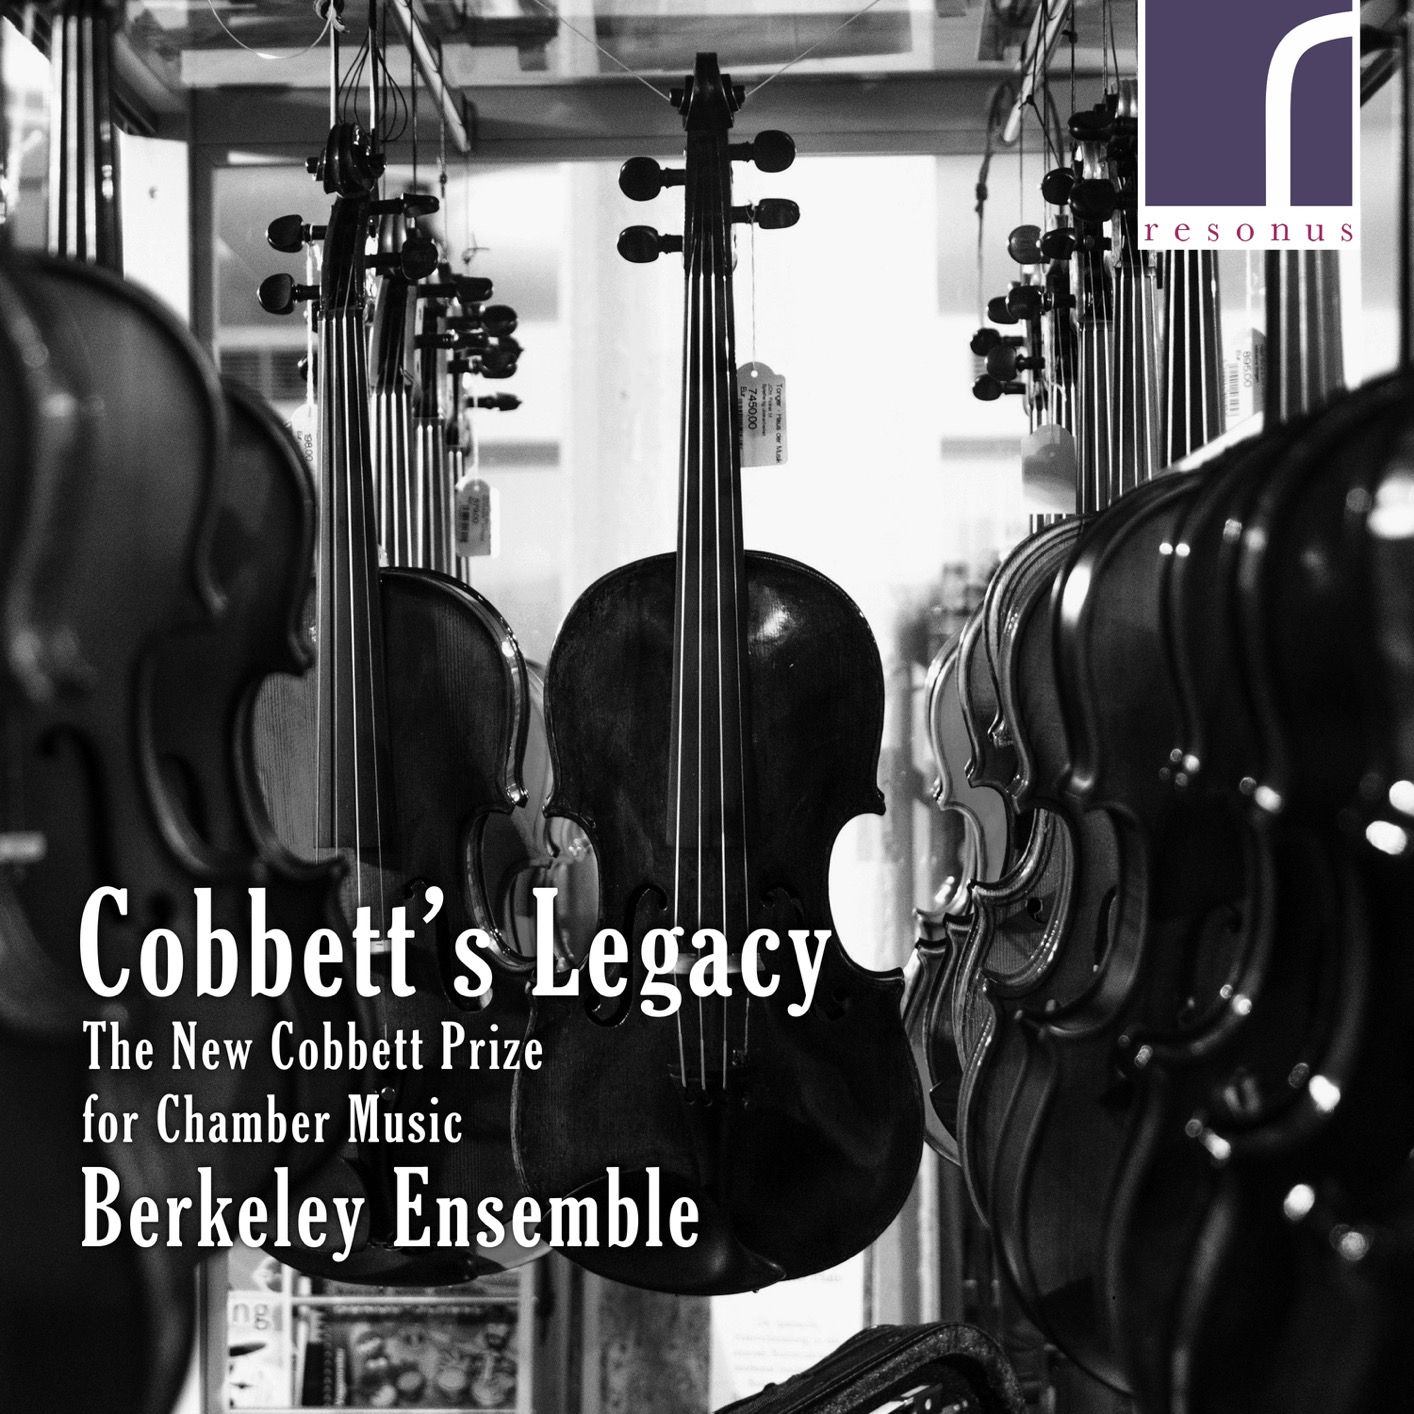 Berkeley Ensemble - Cobbett’s Legacy: The New Cobbett Prize for Chamber Music (2019) [FLAC 24bit/96kHz]